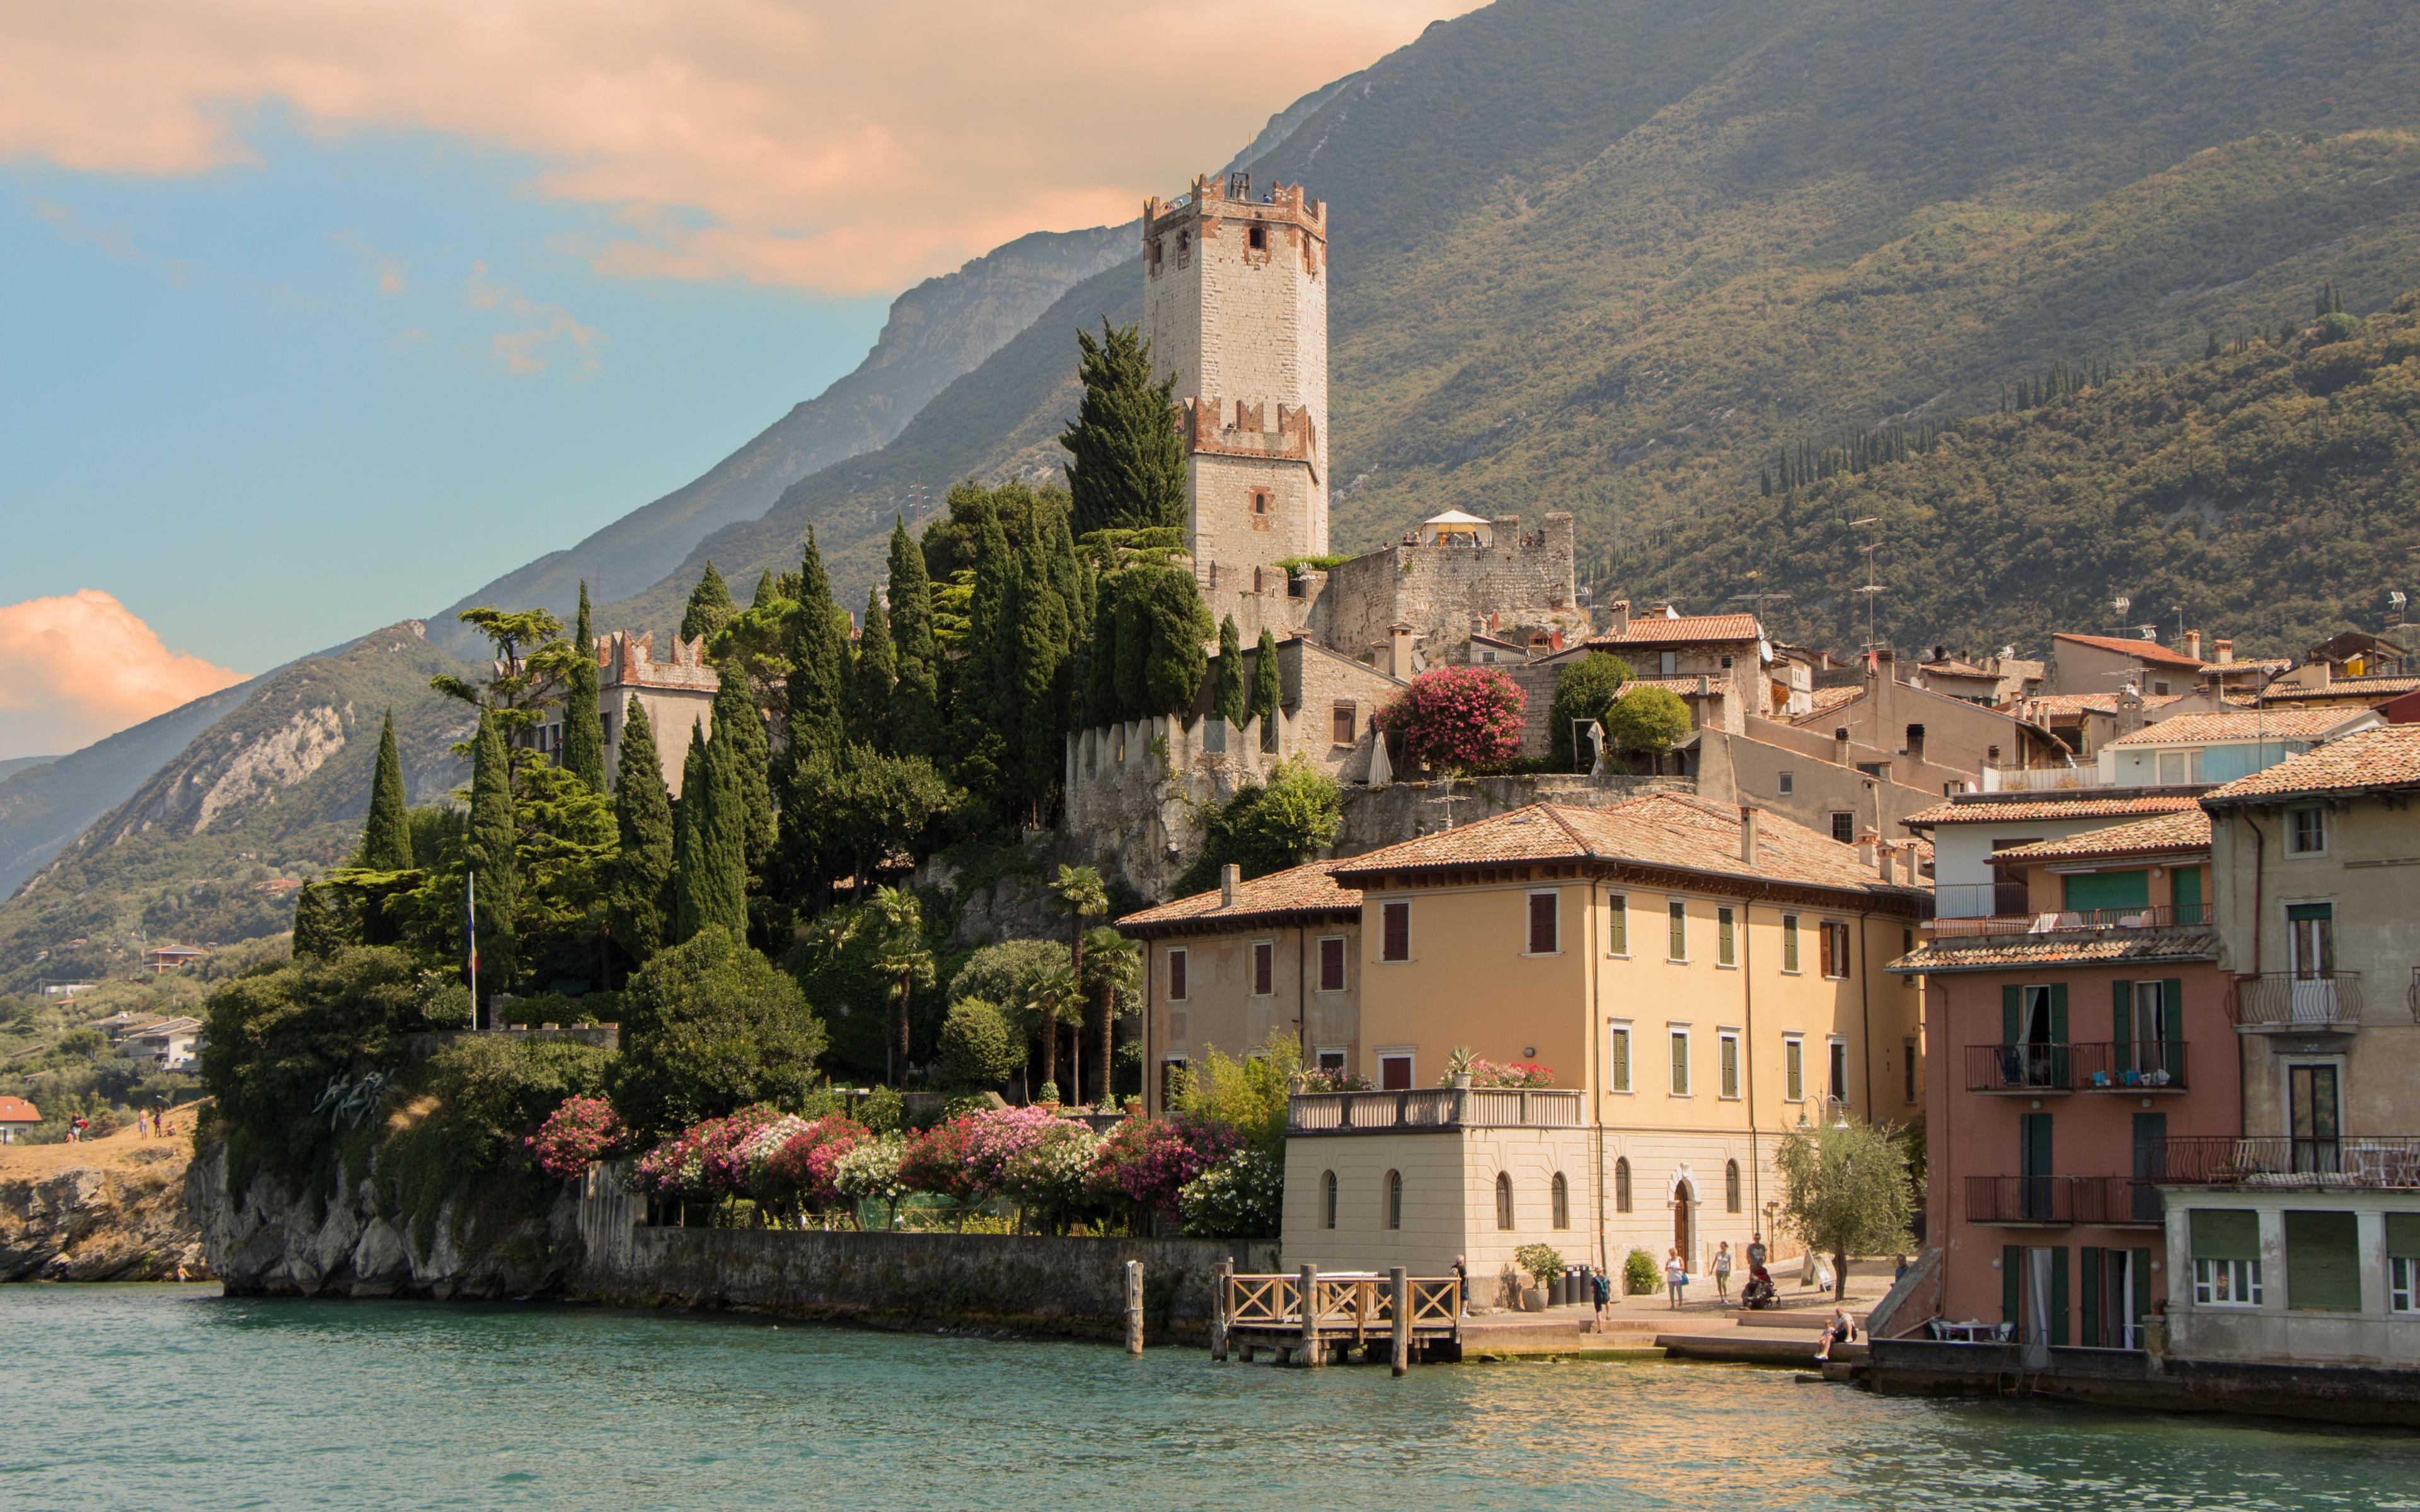 Download wallpaper Lake Garda, beautiful lake, mountain landscape